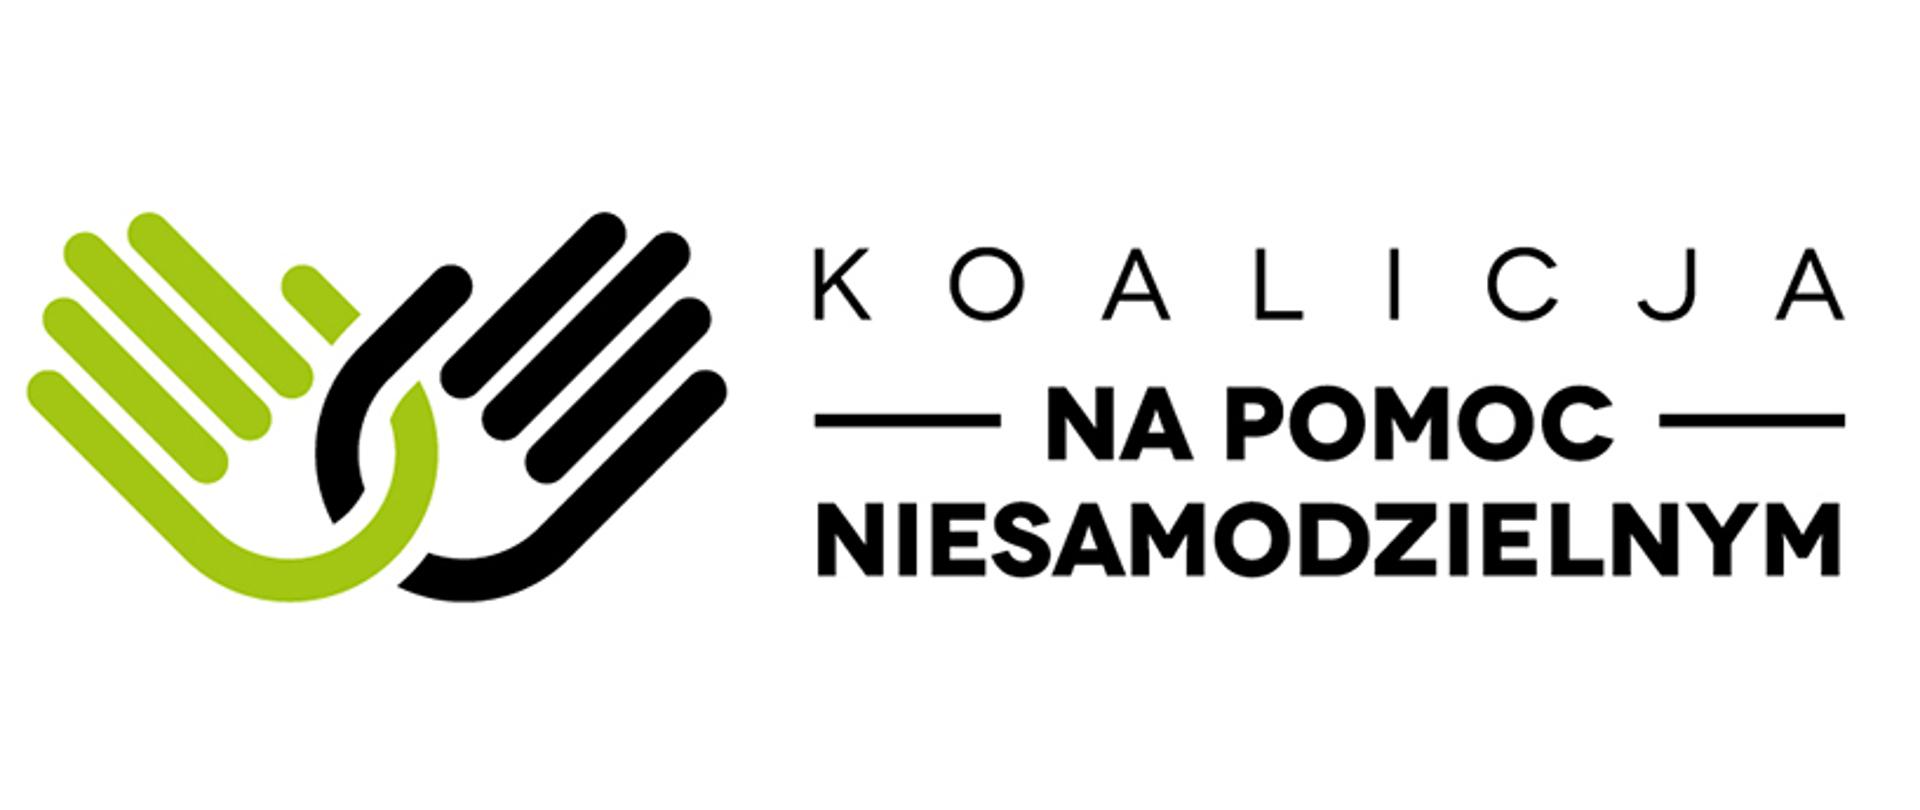 Logo Koalicja na pomoc niesamodzielnym